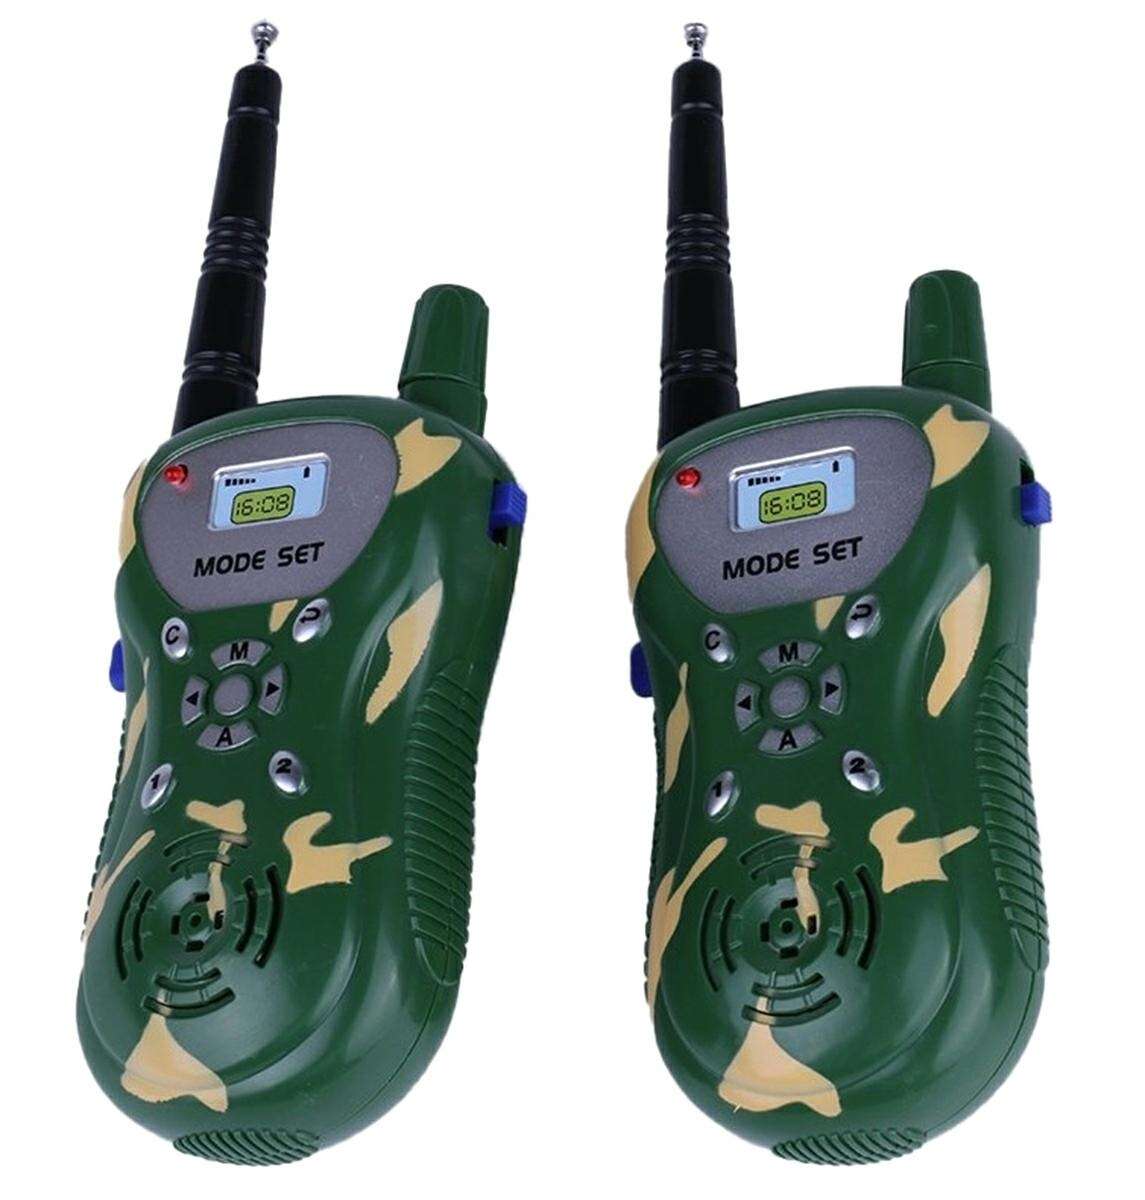 Set statie walkie talkie, semnal pana la 100 de metri, cu baterii incluse, verde camuflaj